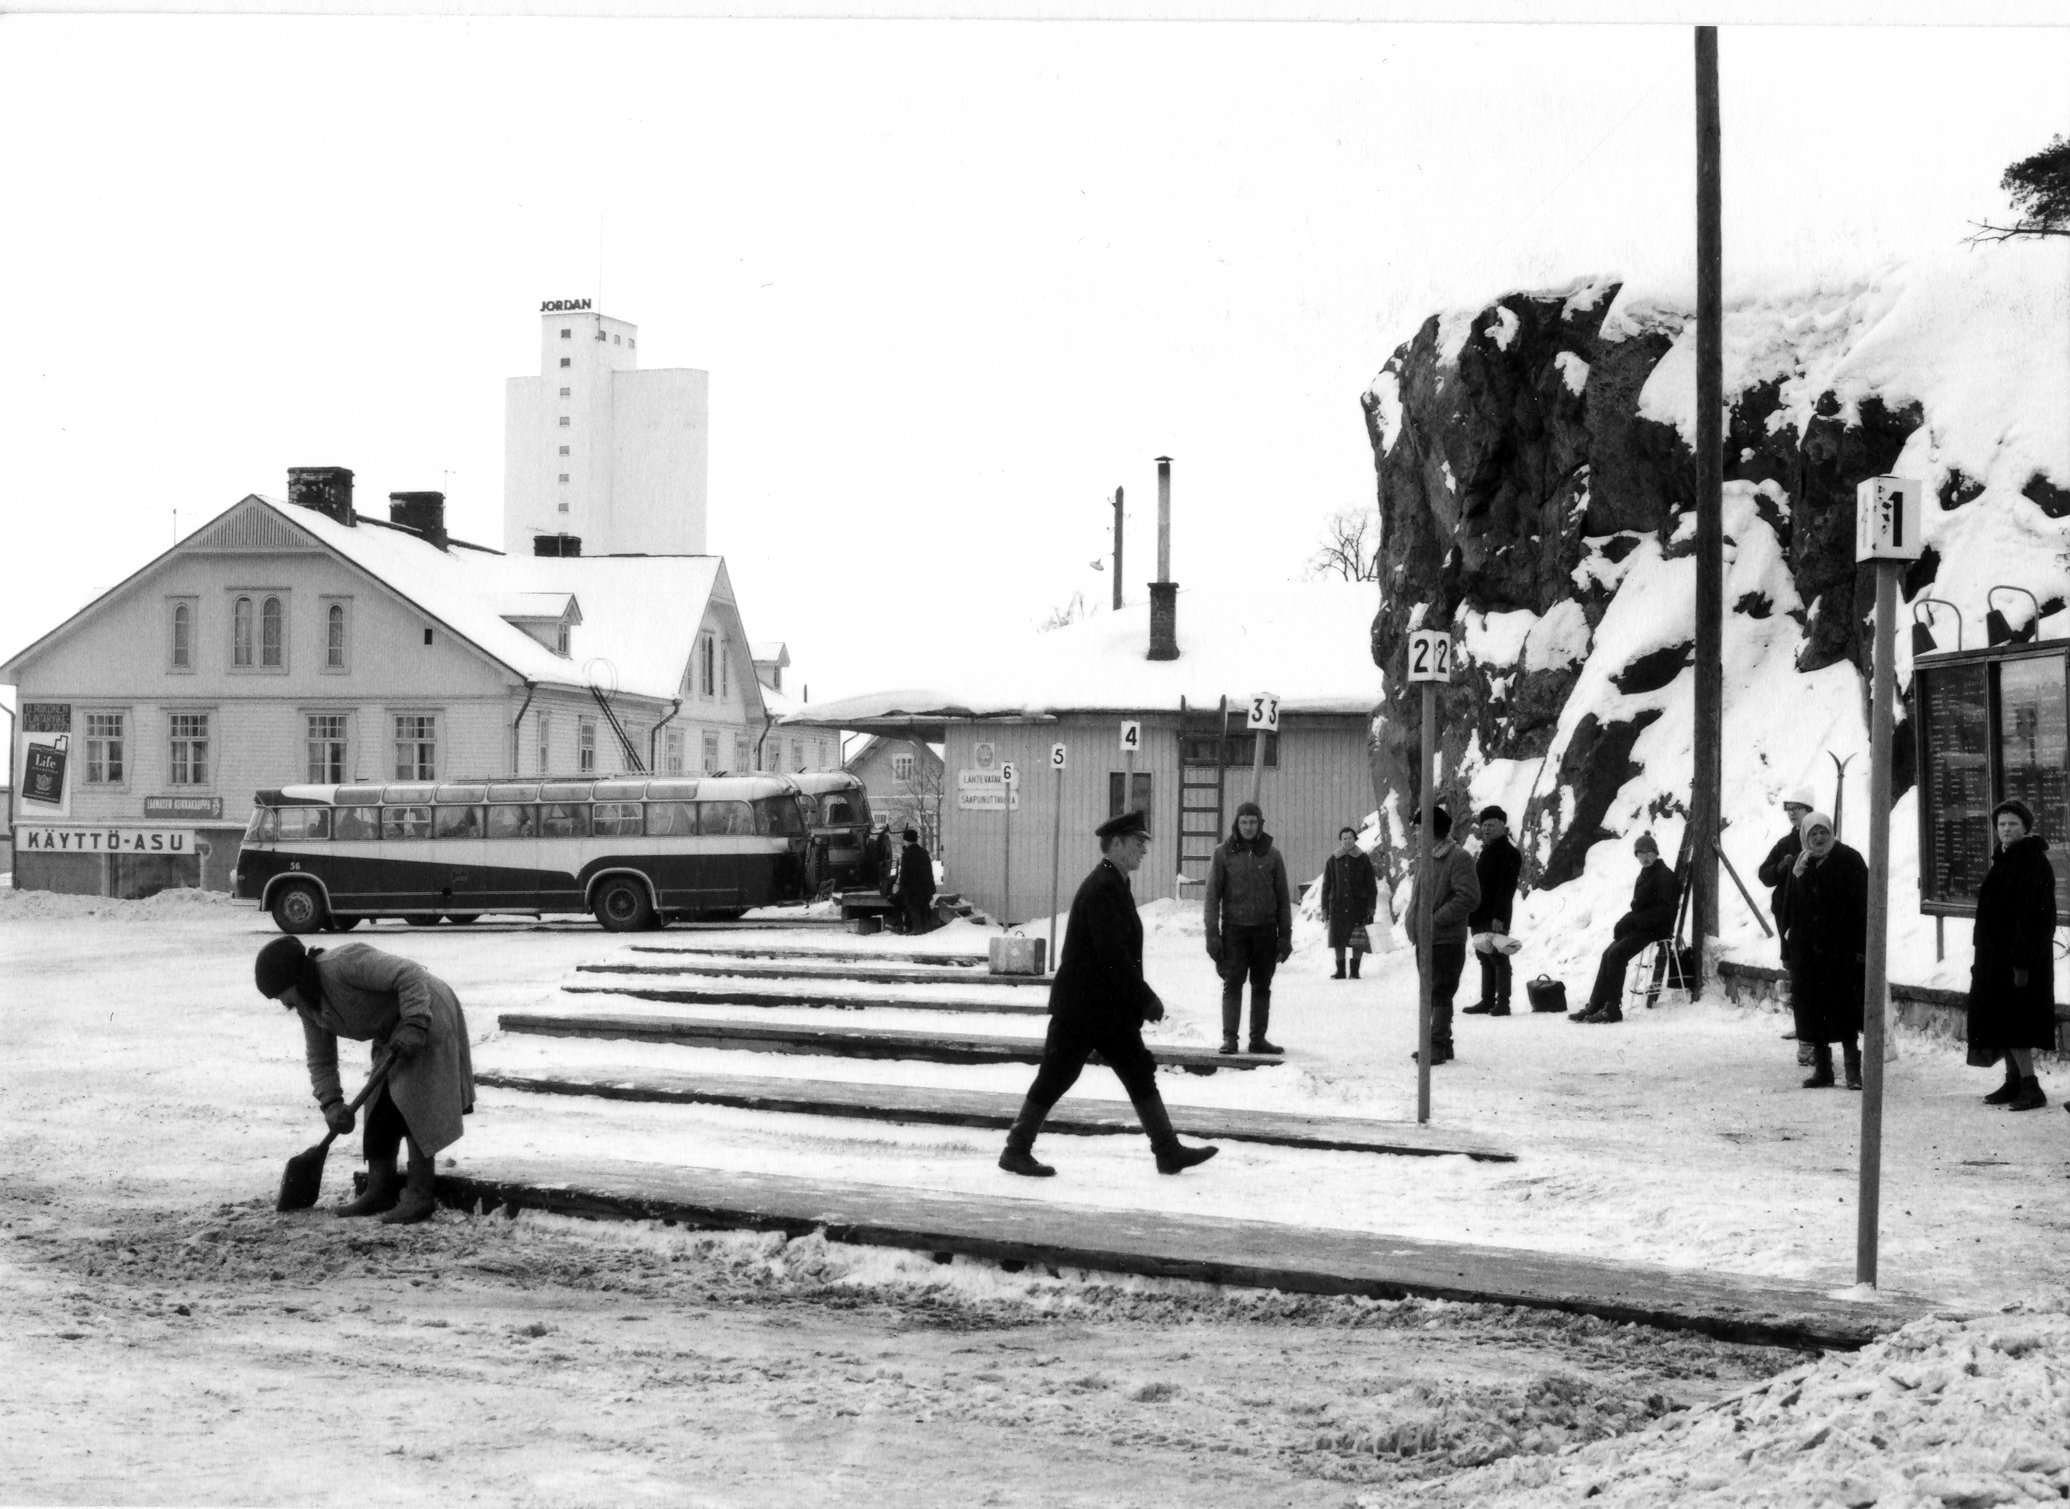 Savonlinnan linja-autoasema Asematienhaarassa. Laiturit 1-6. 1954–1960-luku. Savonlinna Bus Station